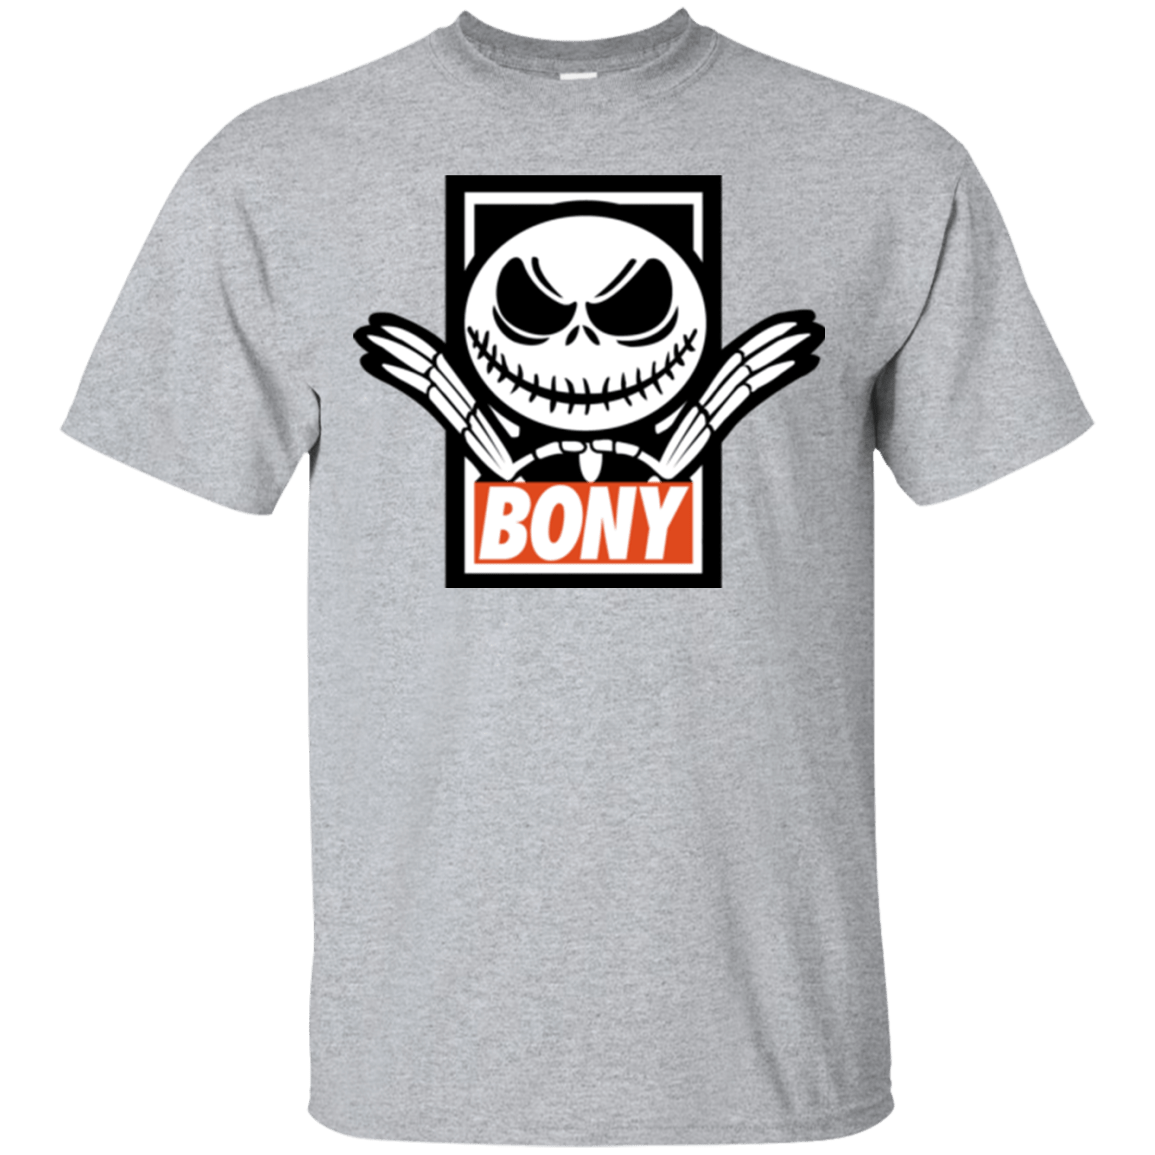 T-Shirts Sport Grey / Small BONY T-Shirt